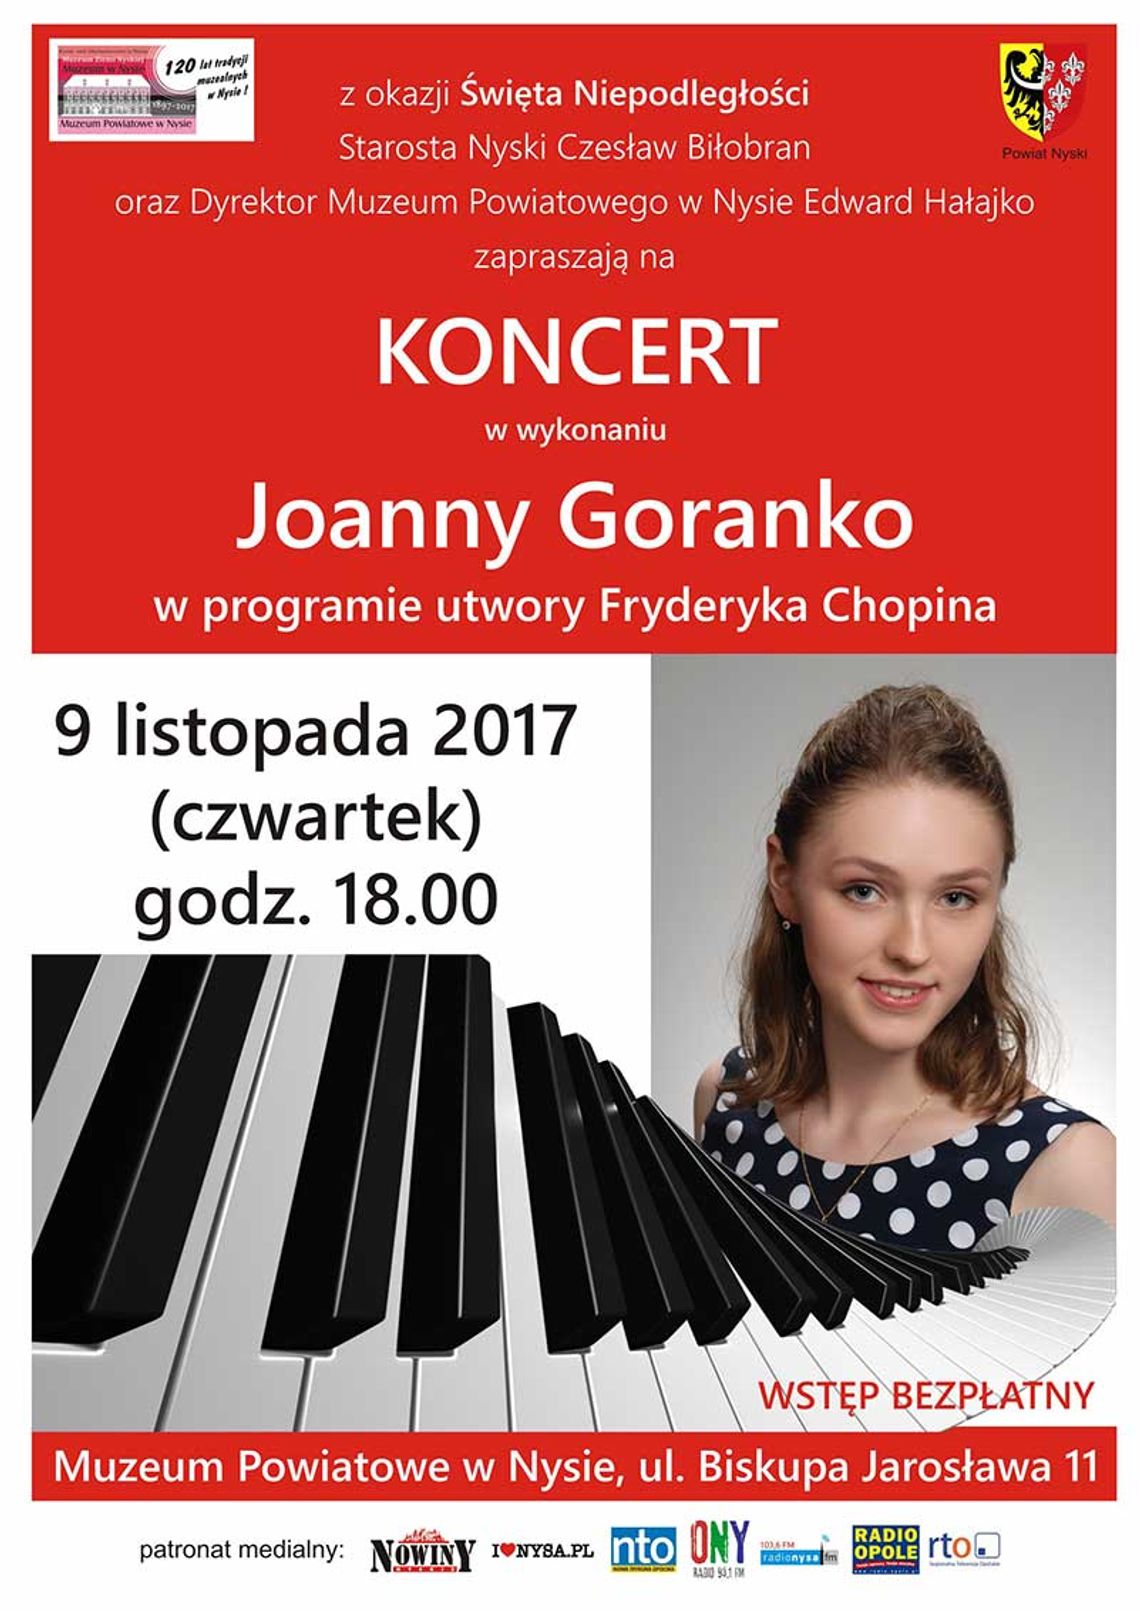 recital Chopinowski w wykonaniu Joanny Goranko